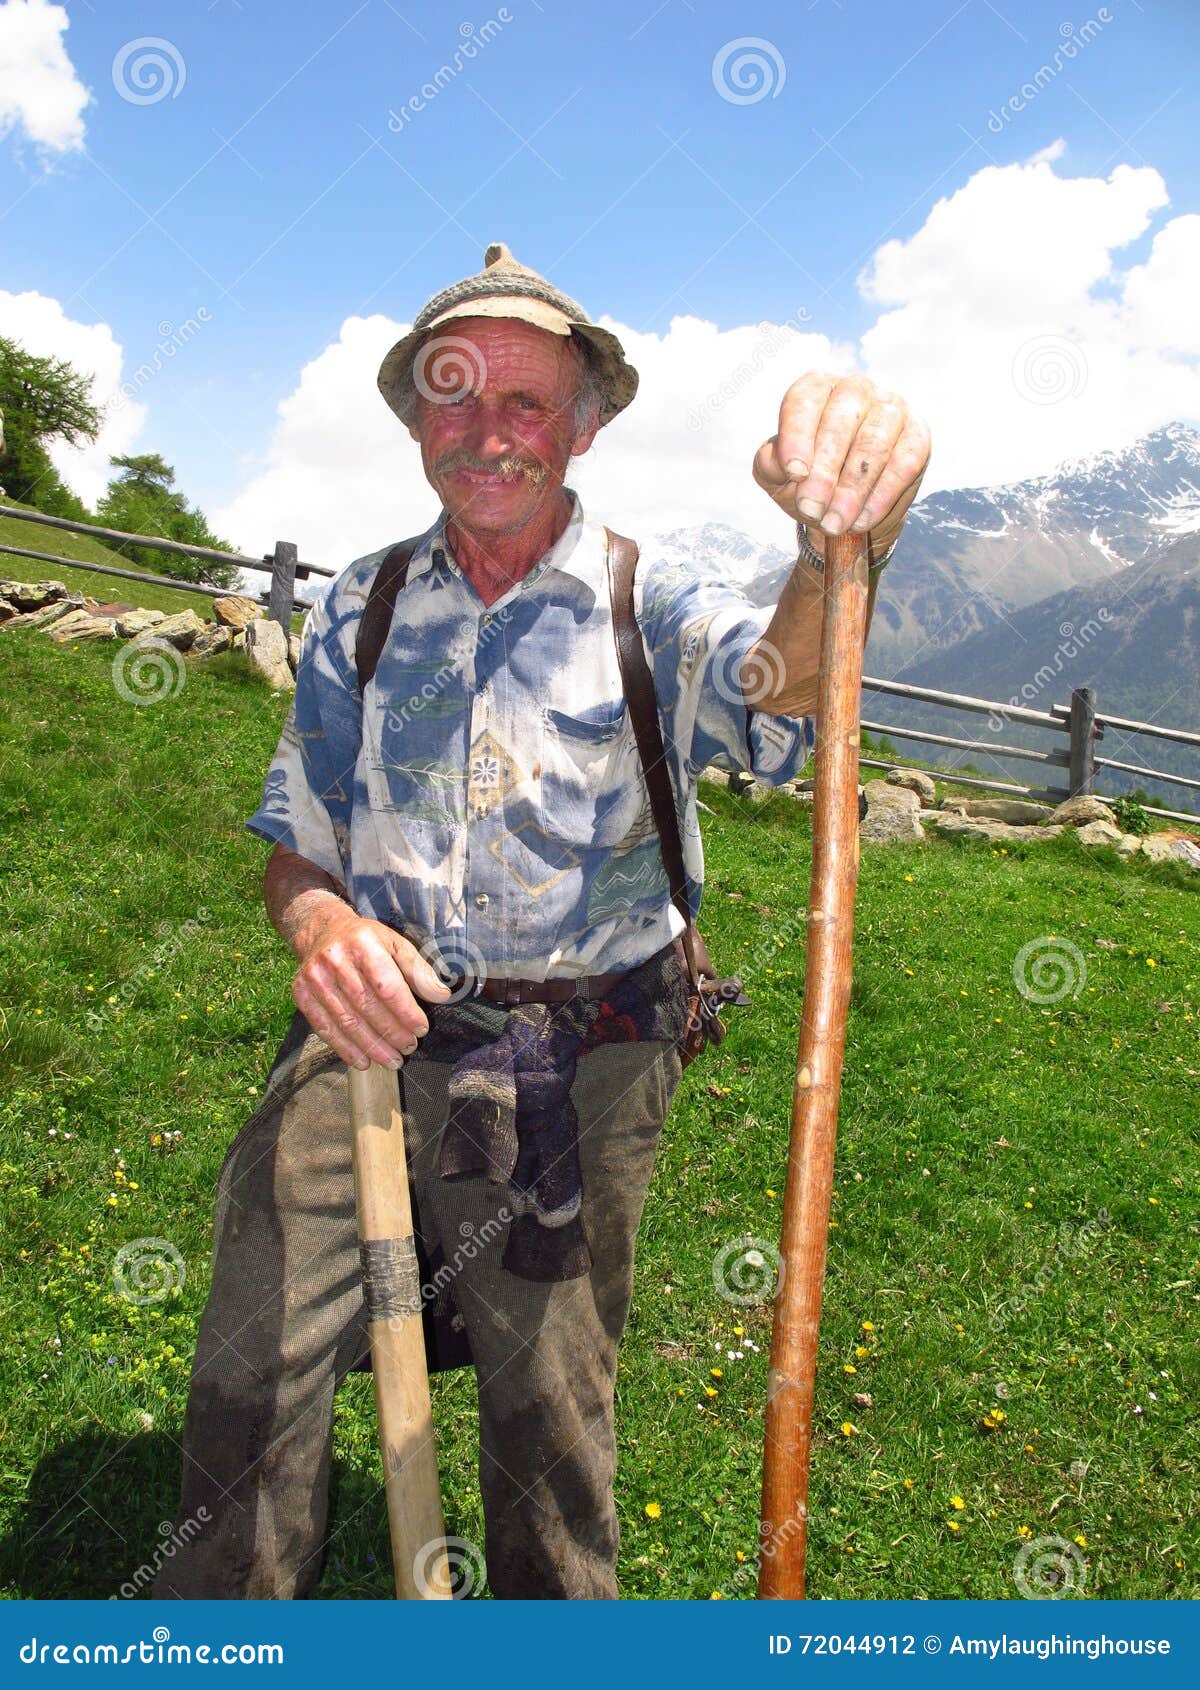 elderly-farmer-shepherd-italian-alps-spring-summer-south-tirol-italy-june-smiling-leans-wooden-staff-green-72044912.jpg